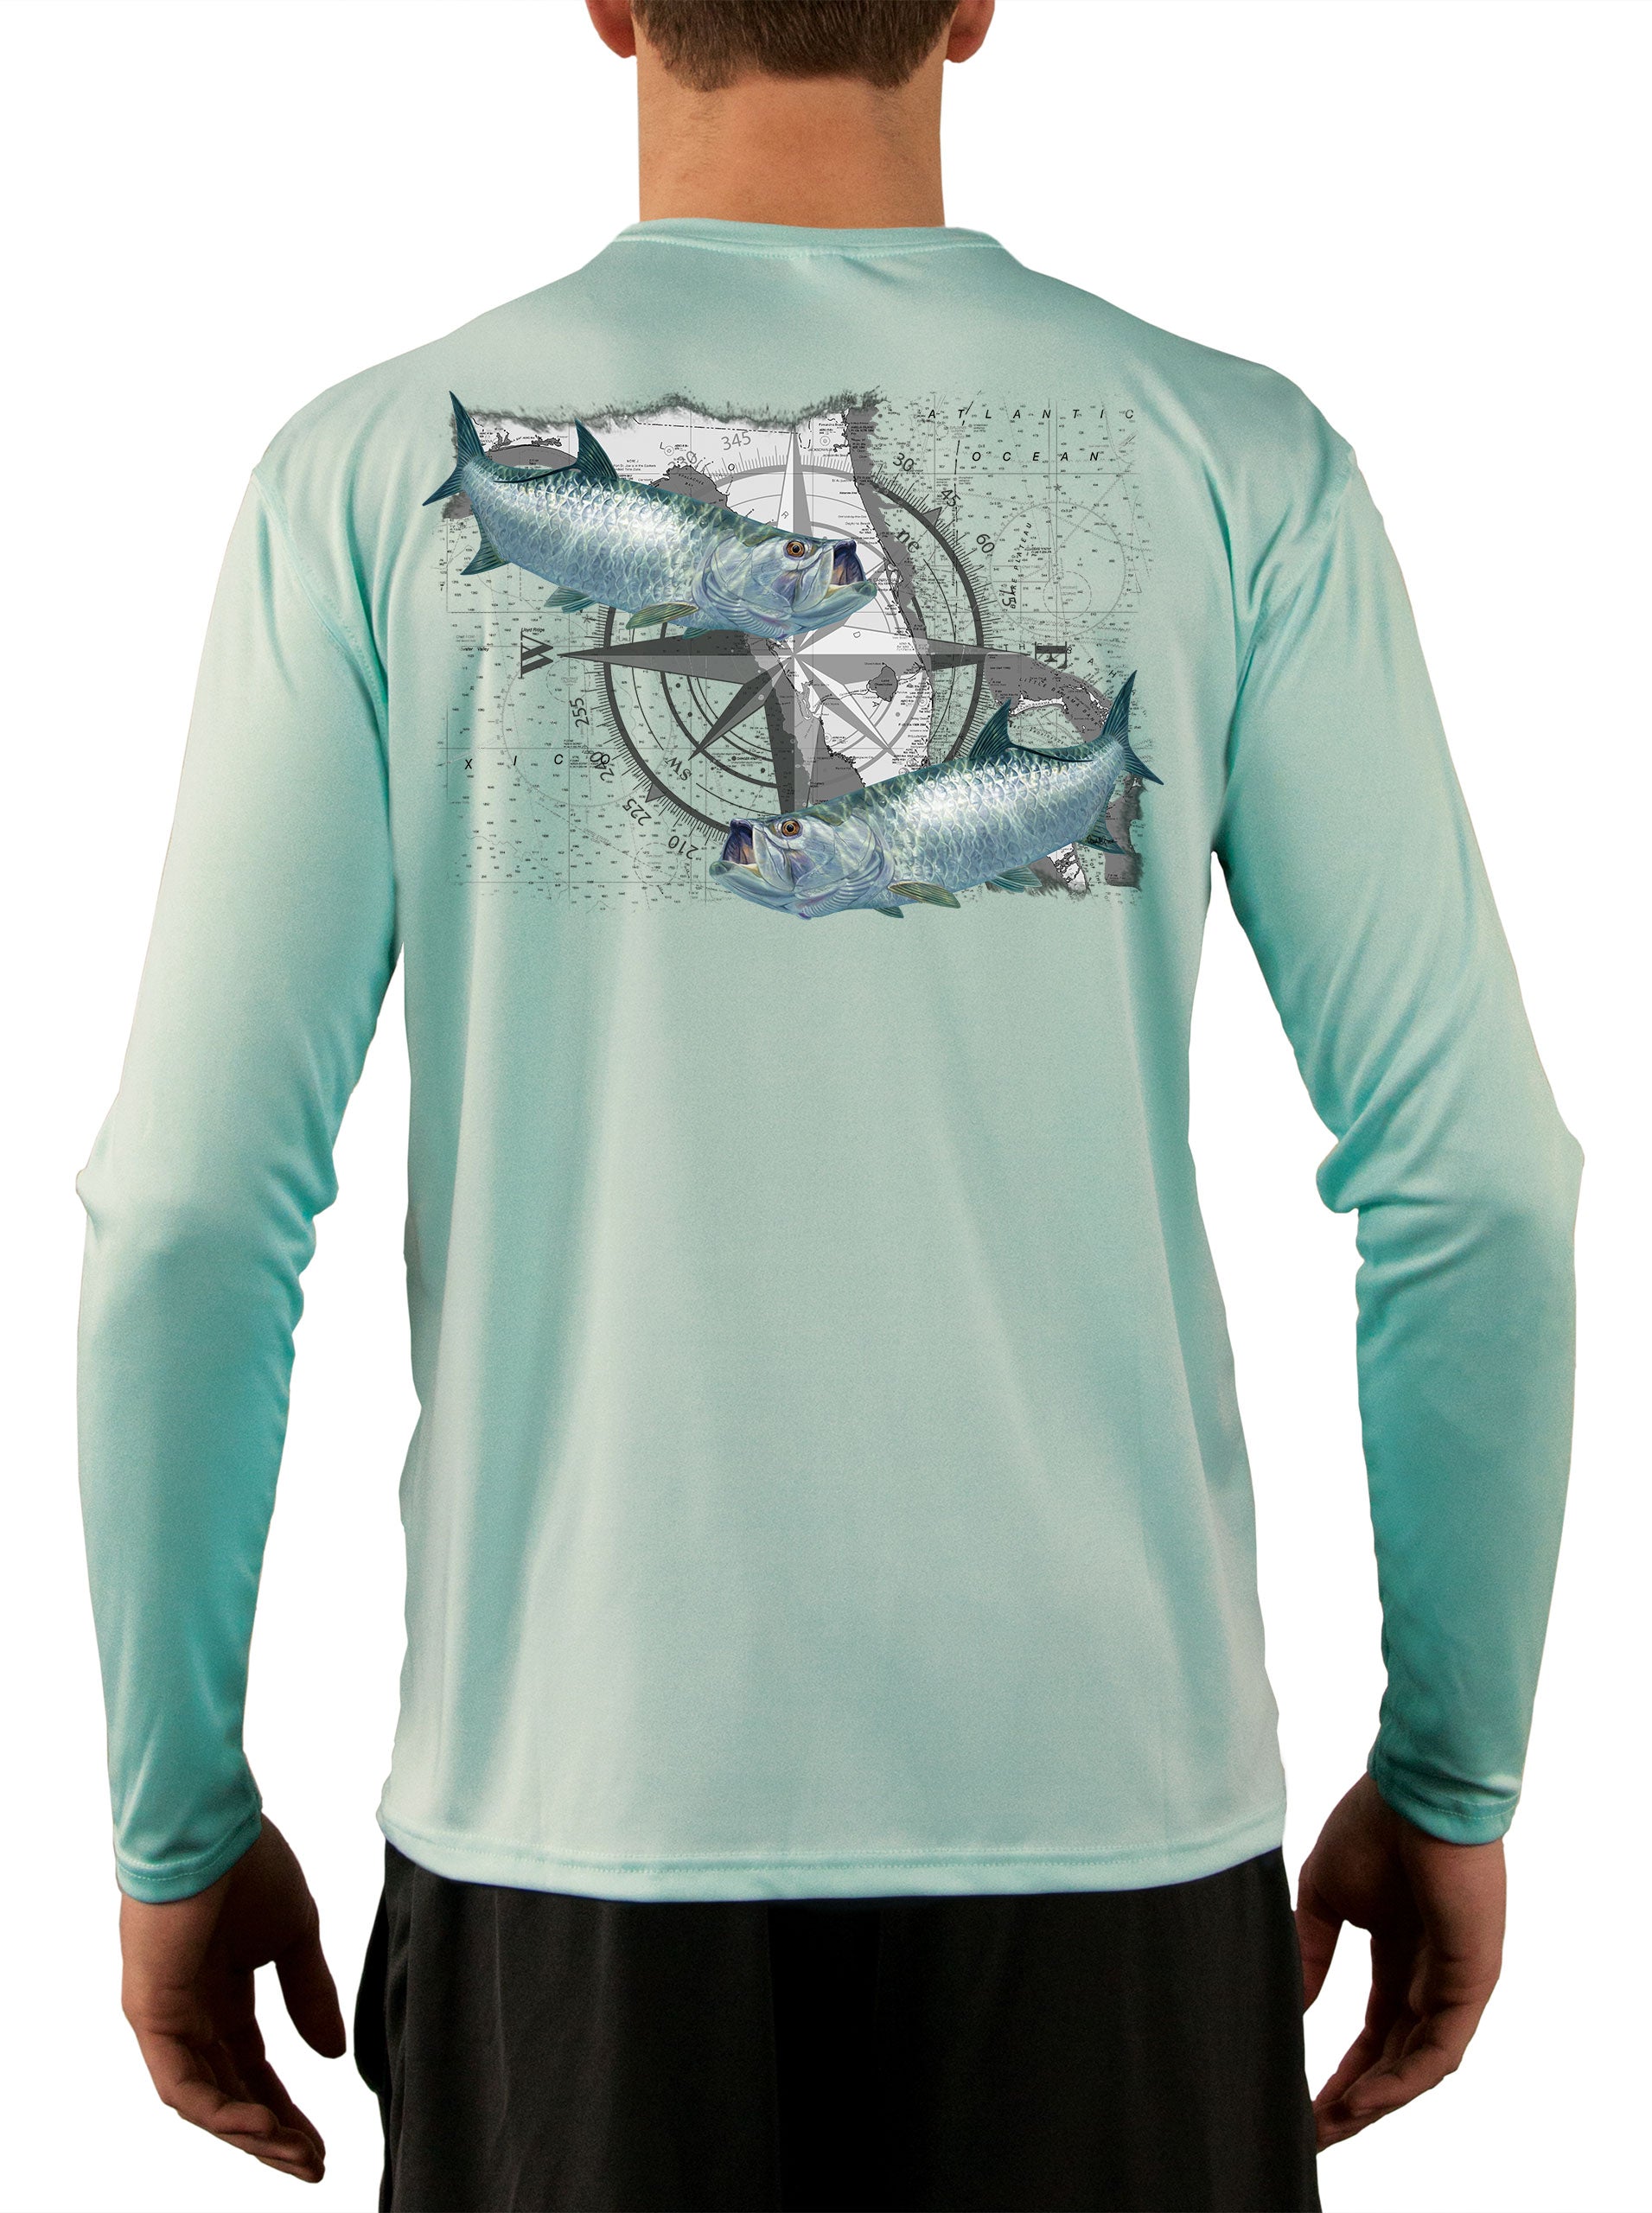 Tarpon Compass Fishing Shirt - Skiff Life